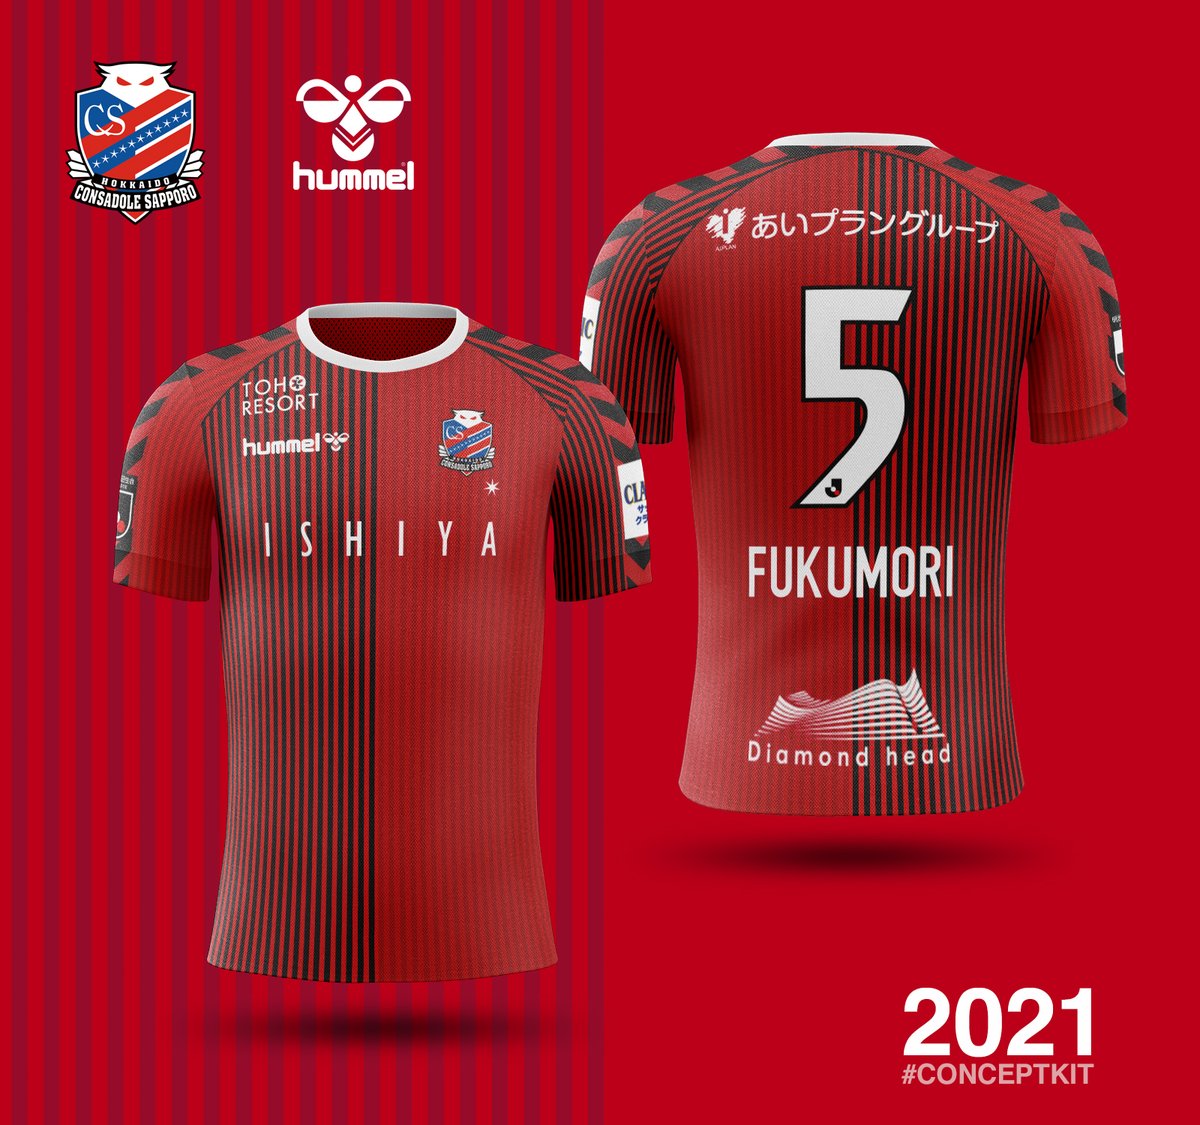 横浜 fc ユニフォーム 2021 202652-横浜 fc ユニフォーム 2021 - Saesipapictsqd